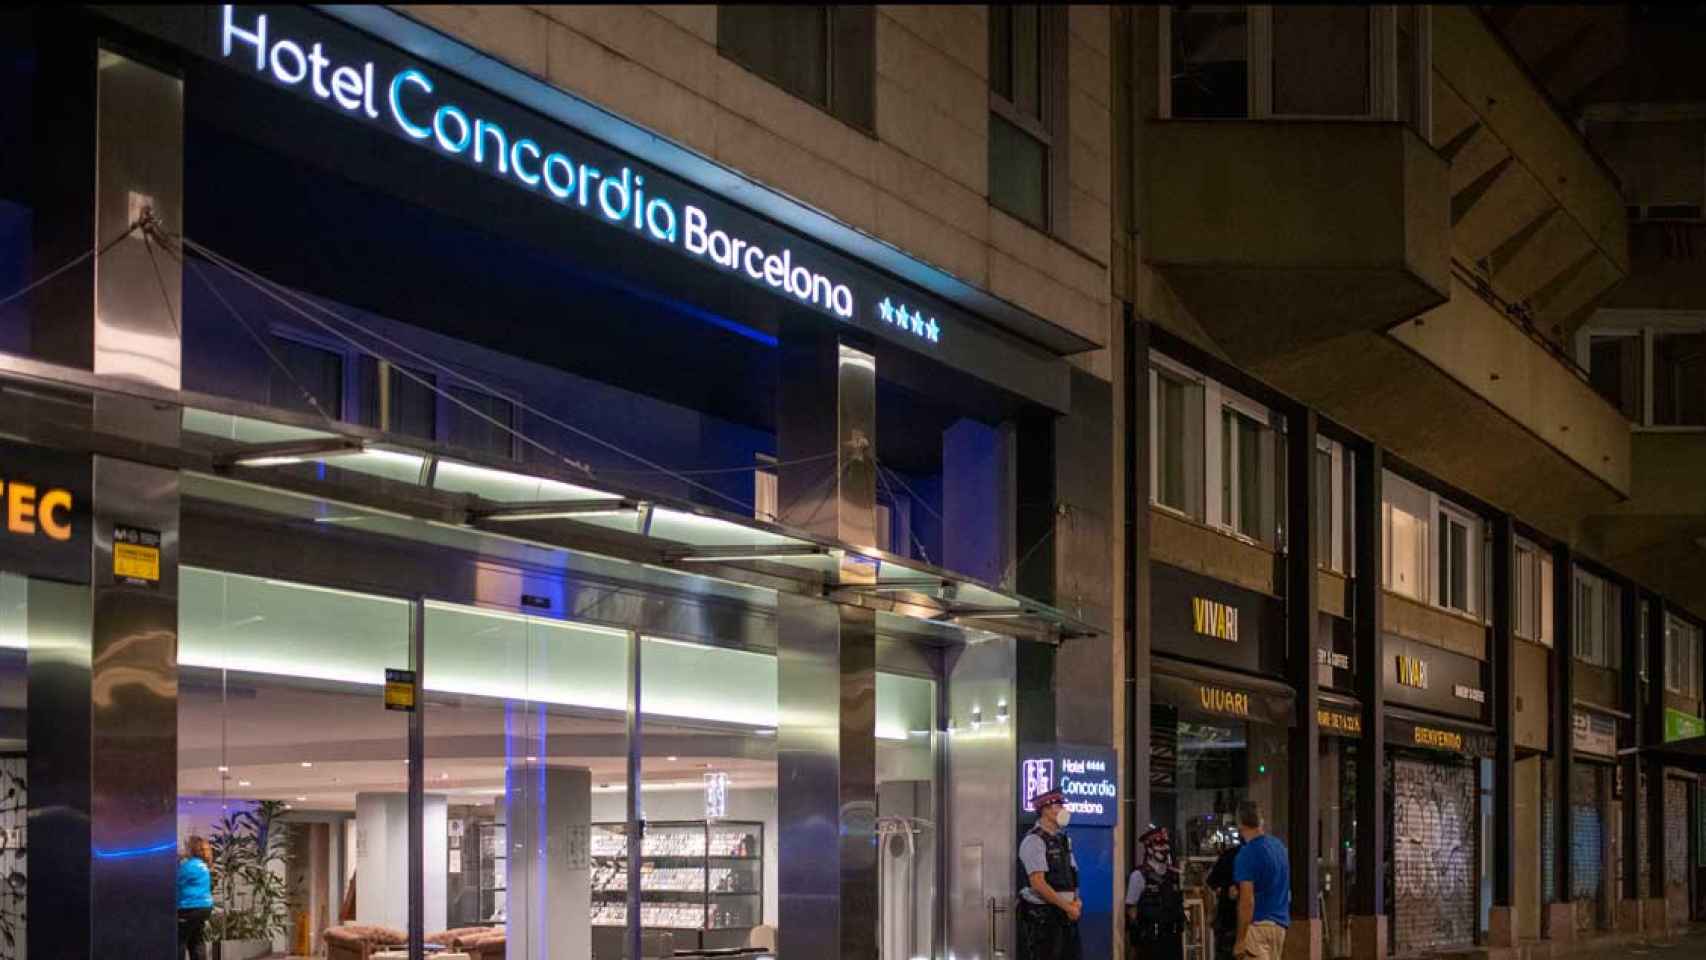 Hotel Concordia de Barcelona donde el parricida acabó con la vida de su hijo / EUROPA PRESS